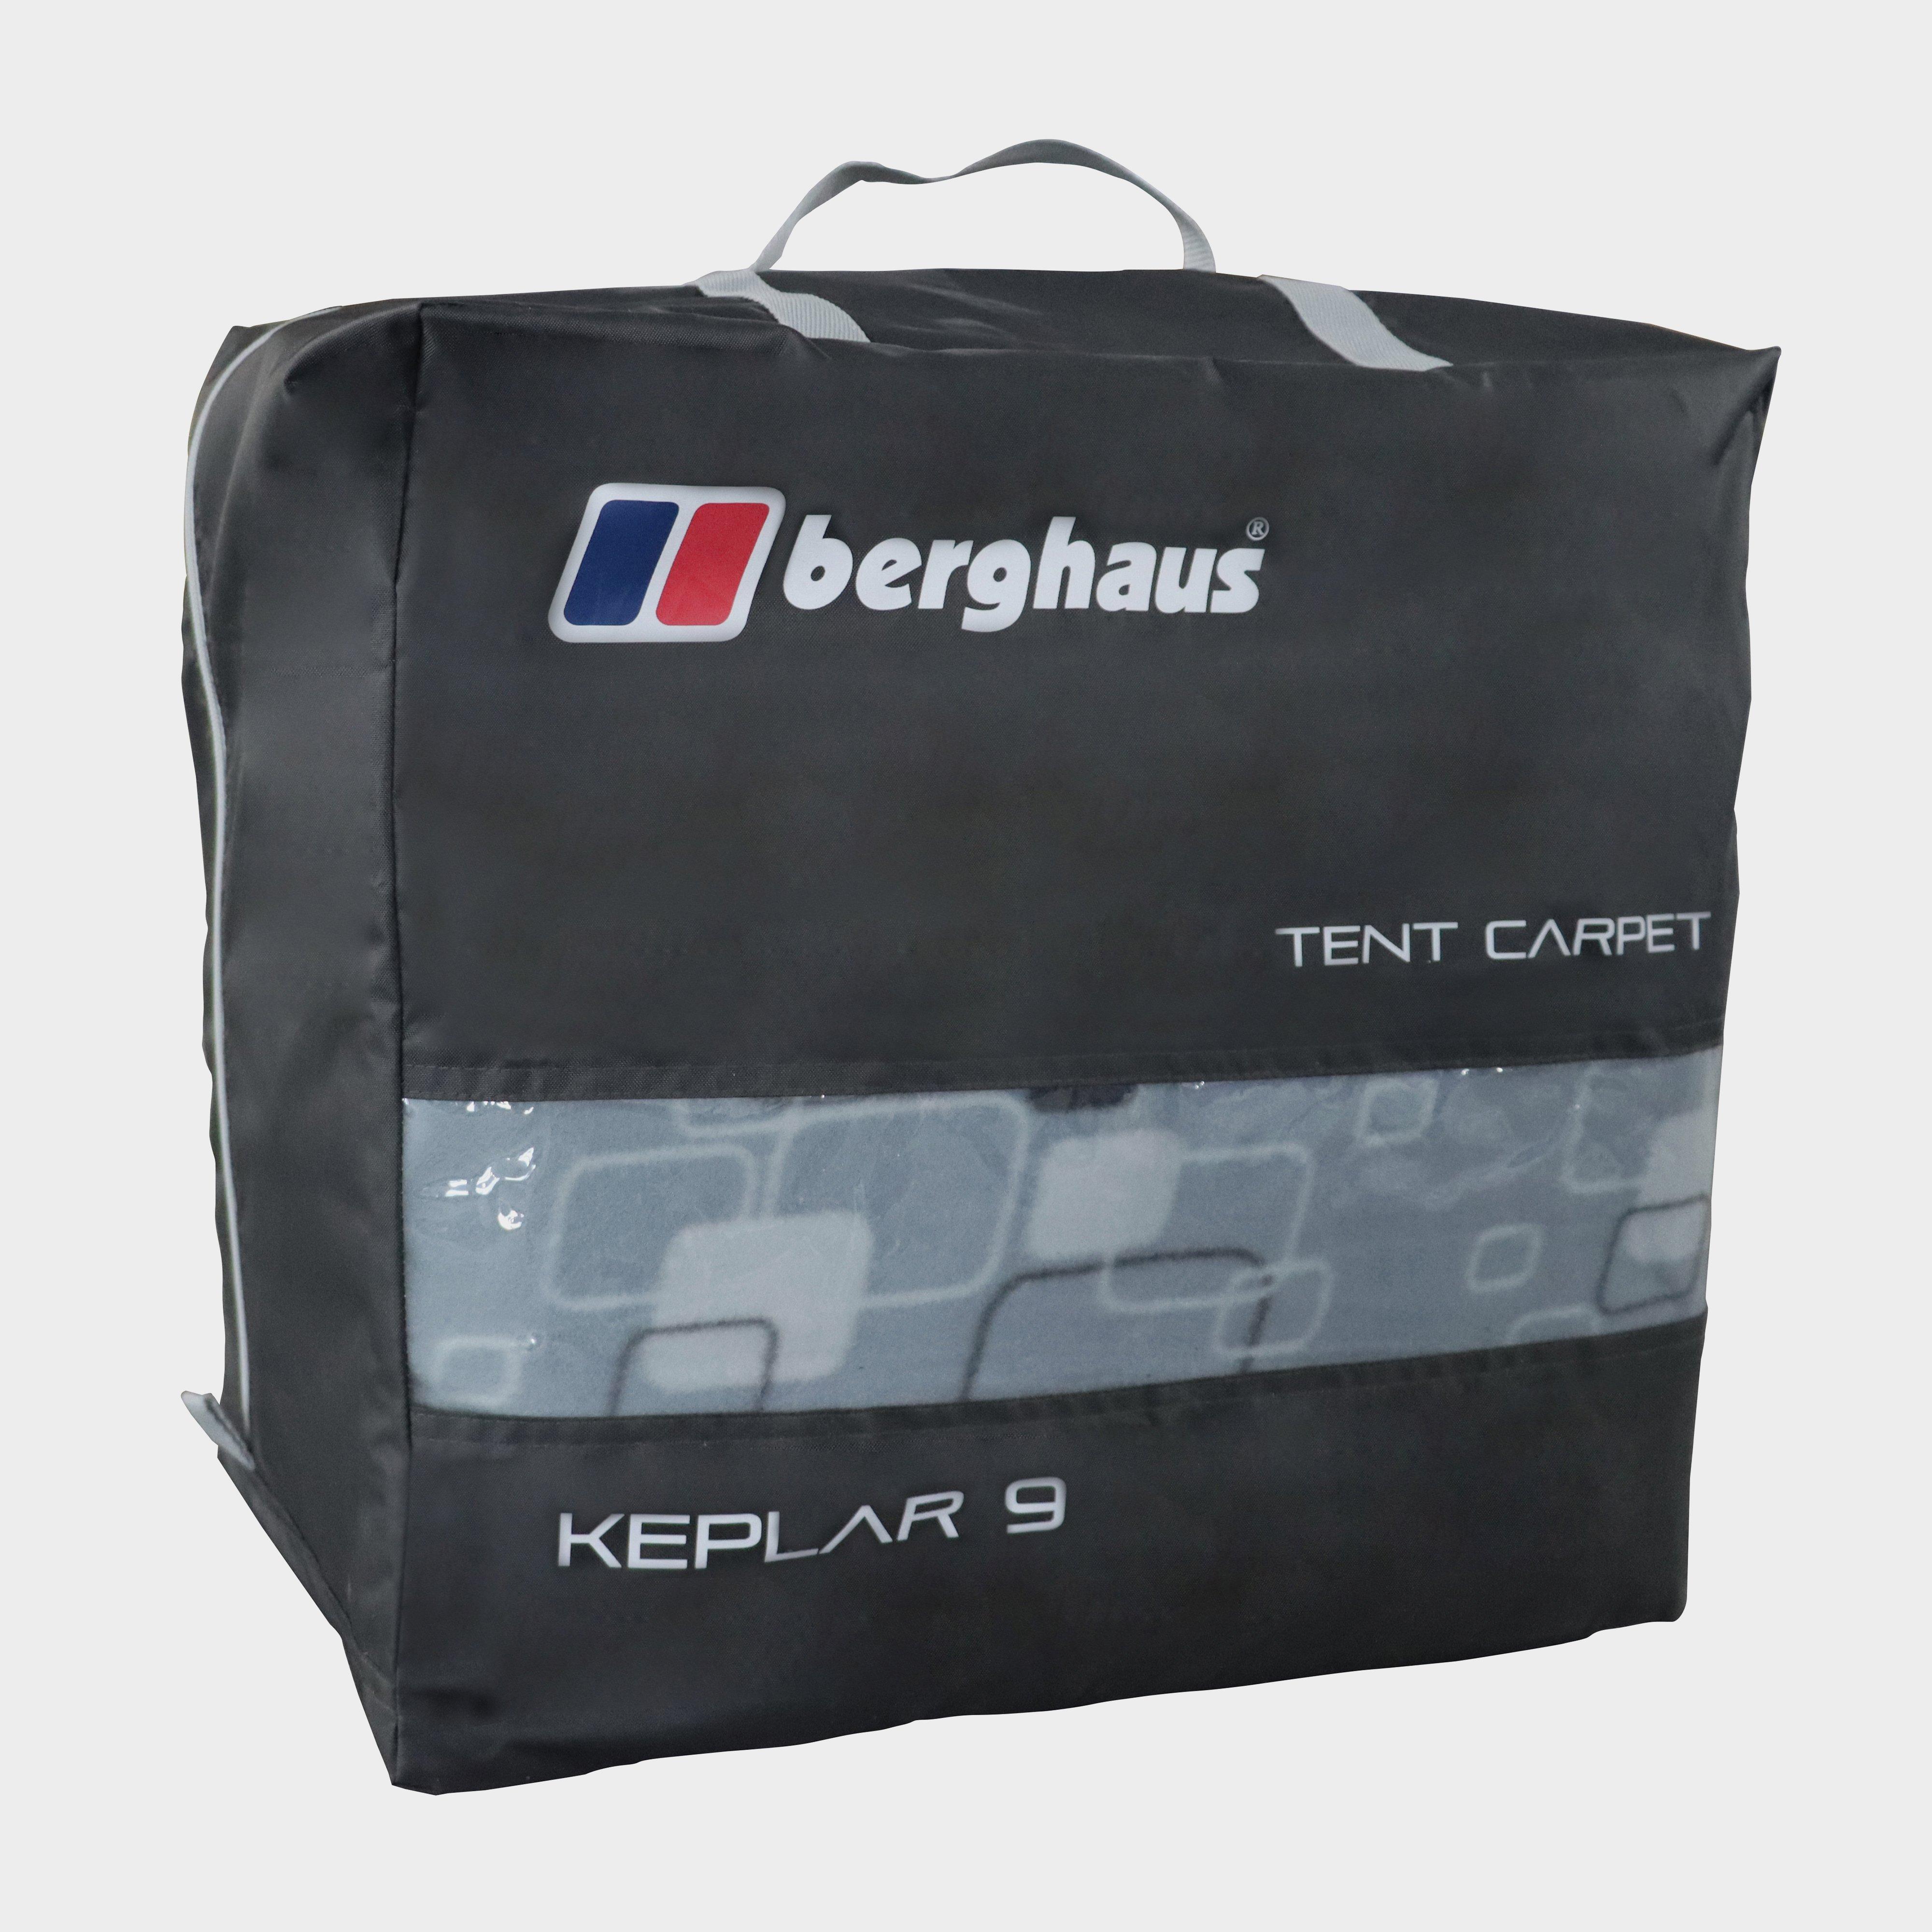 Berghaus Kepler 9 Tent Carpet  Multi Coloured